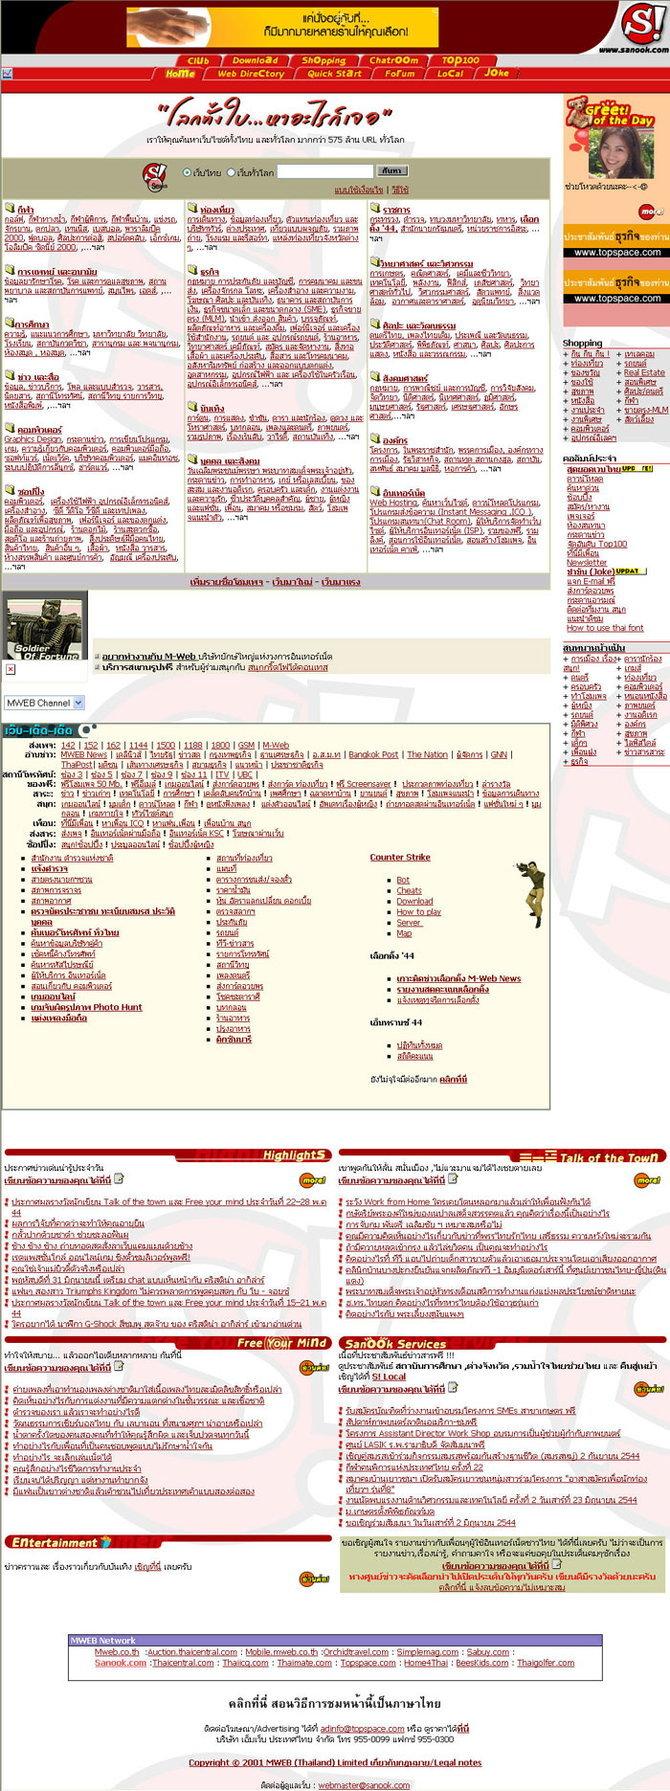 ภาพหน้าเว็บไซต์ Sanook.com ตั้งแต่อดีต ถึง ปัจจุบัน